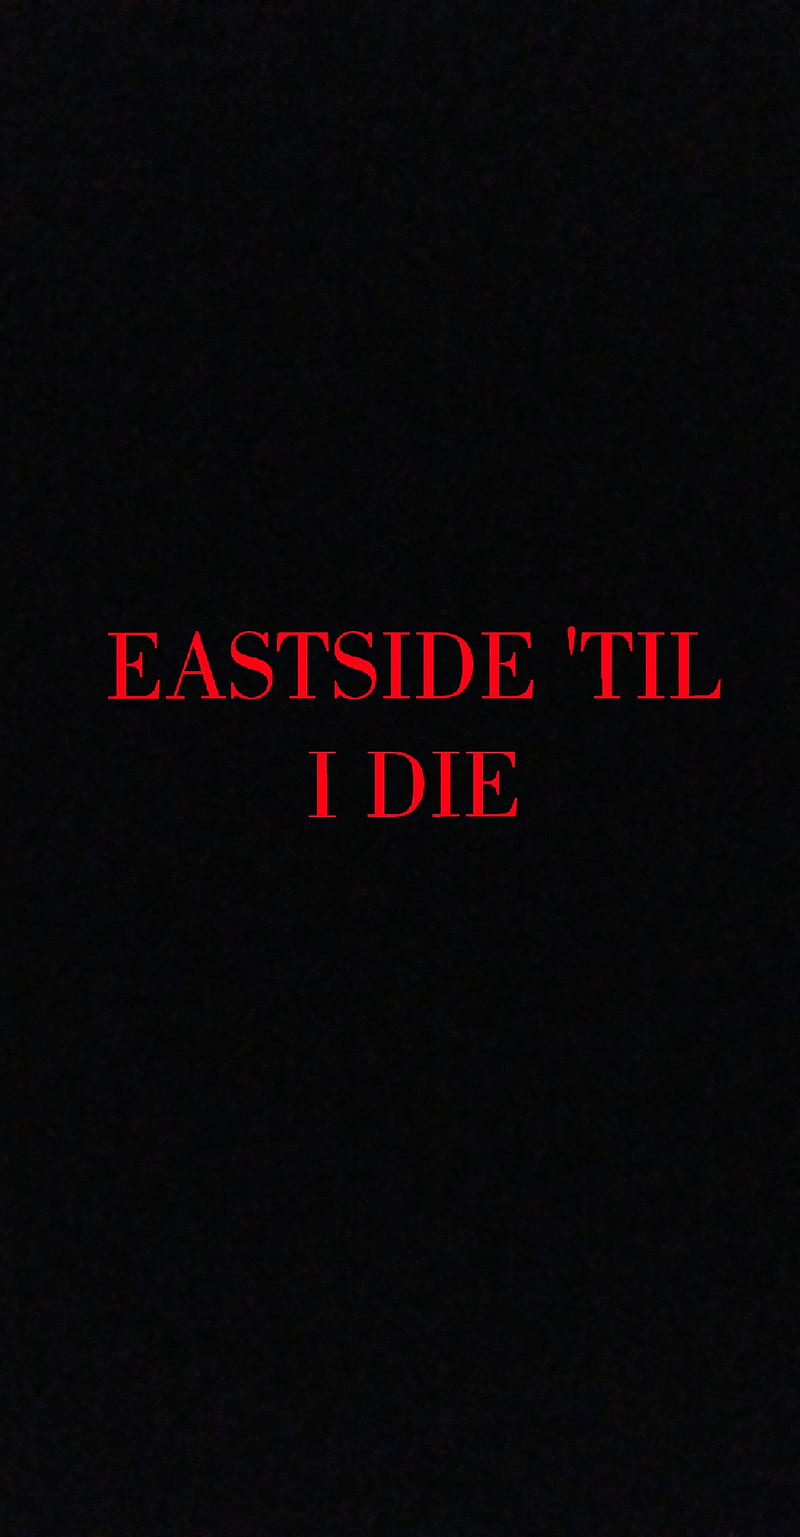 New Rap eastside rapper HD wallpaper  Pxfuel